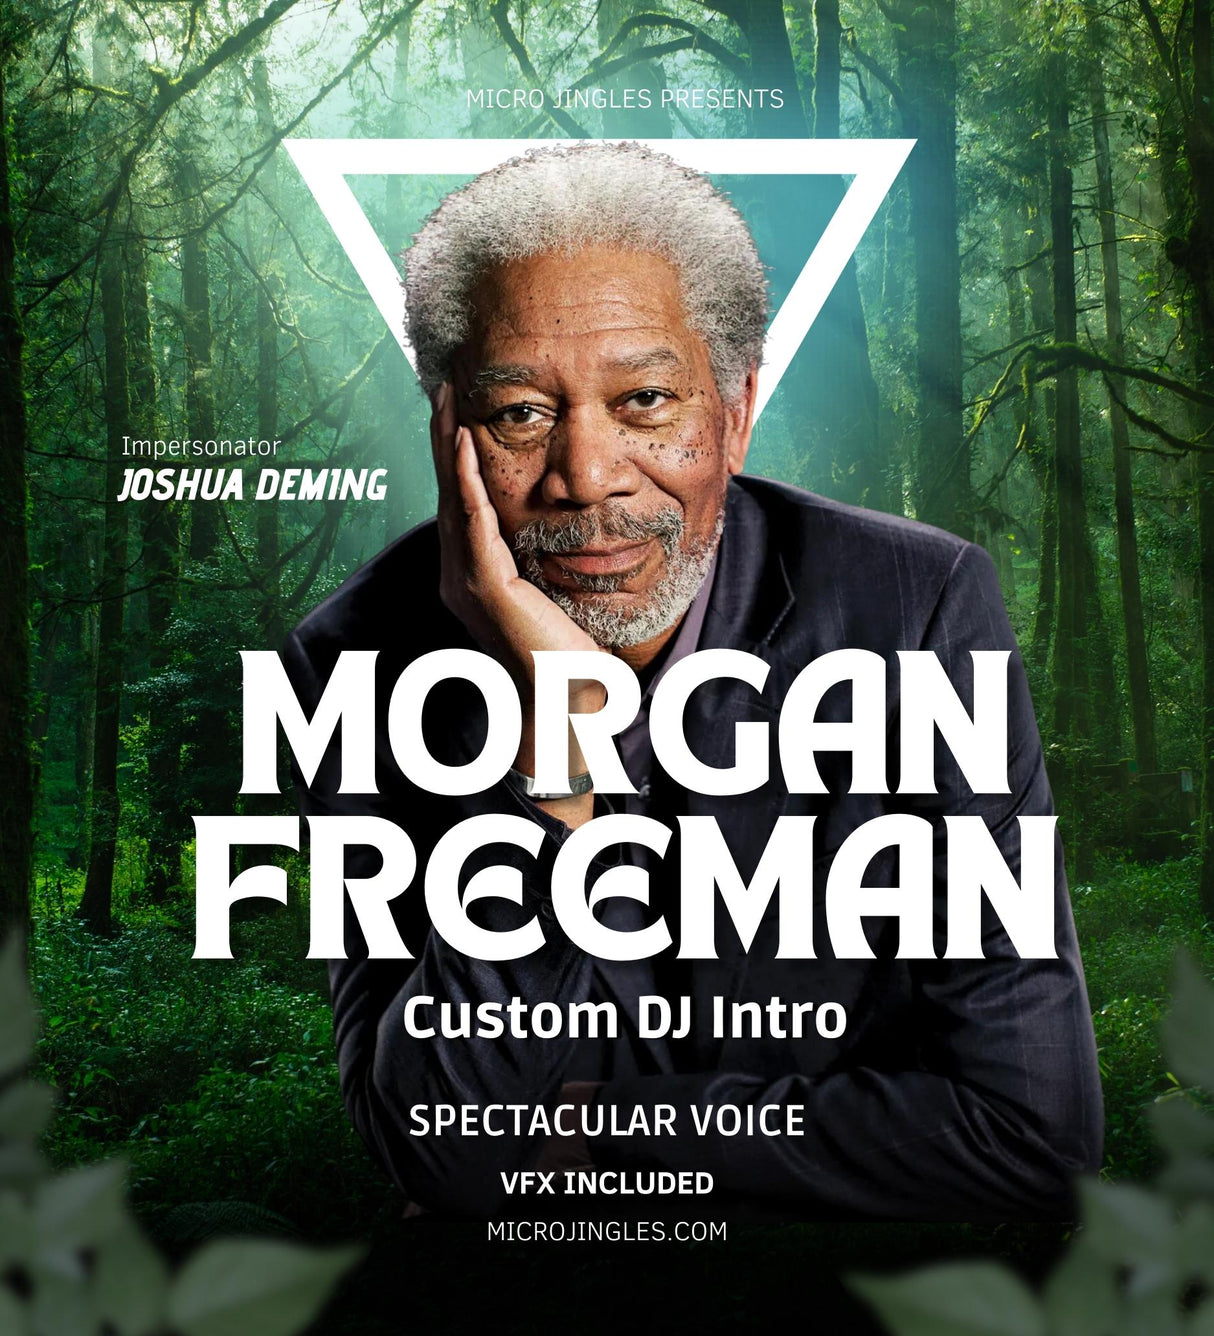 Custom DJ Intro by Morgan Freeman (Joshua)